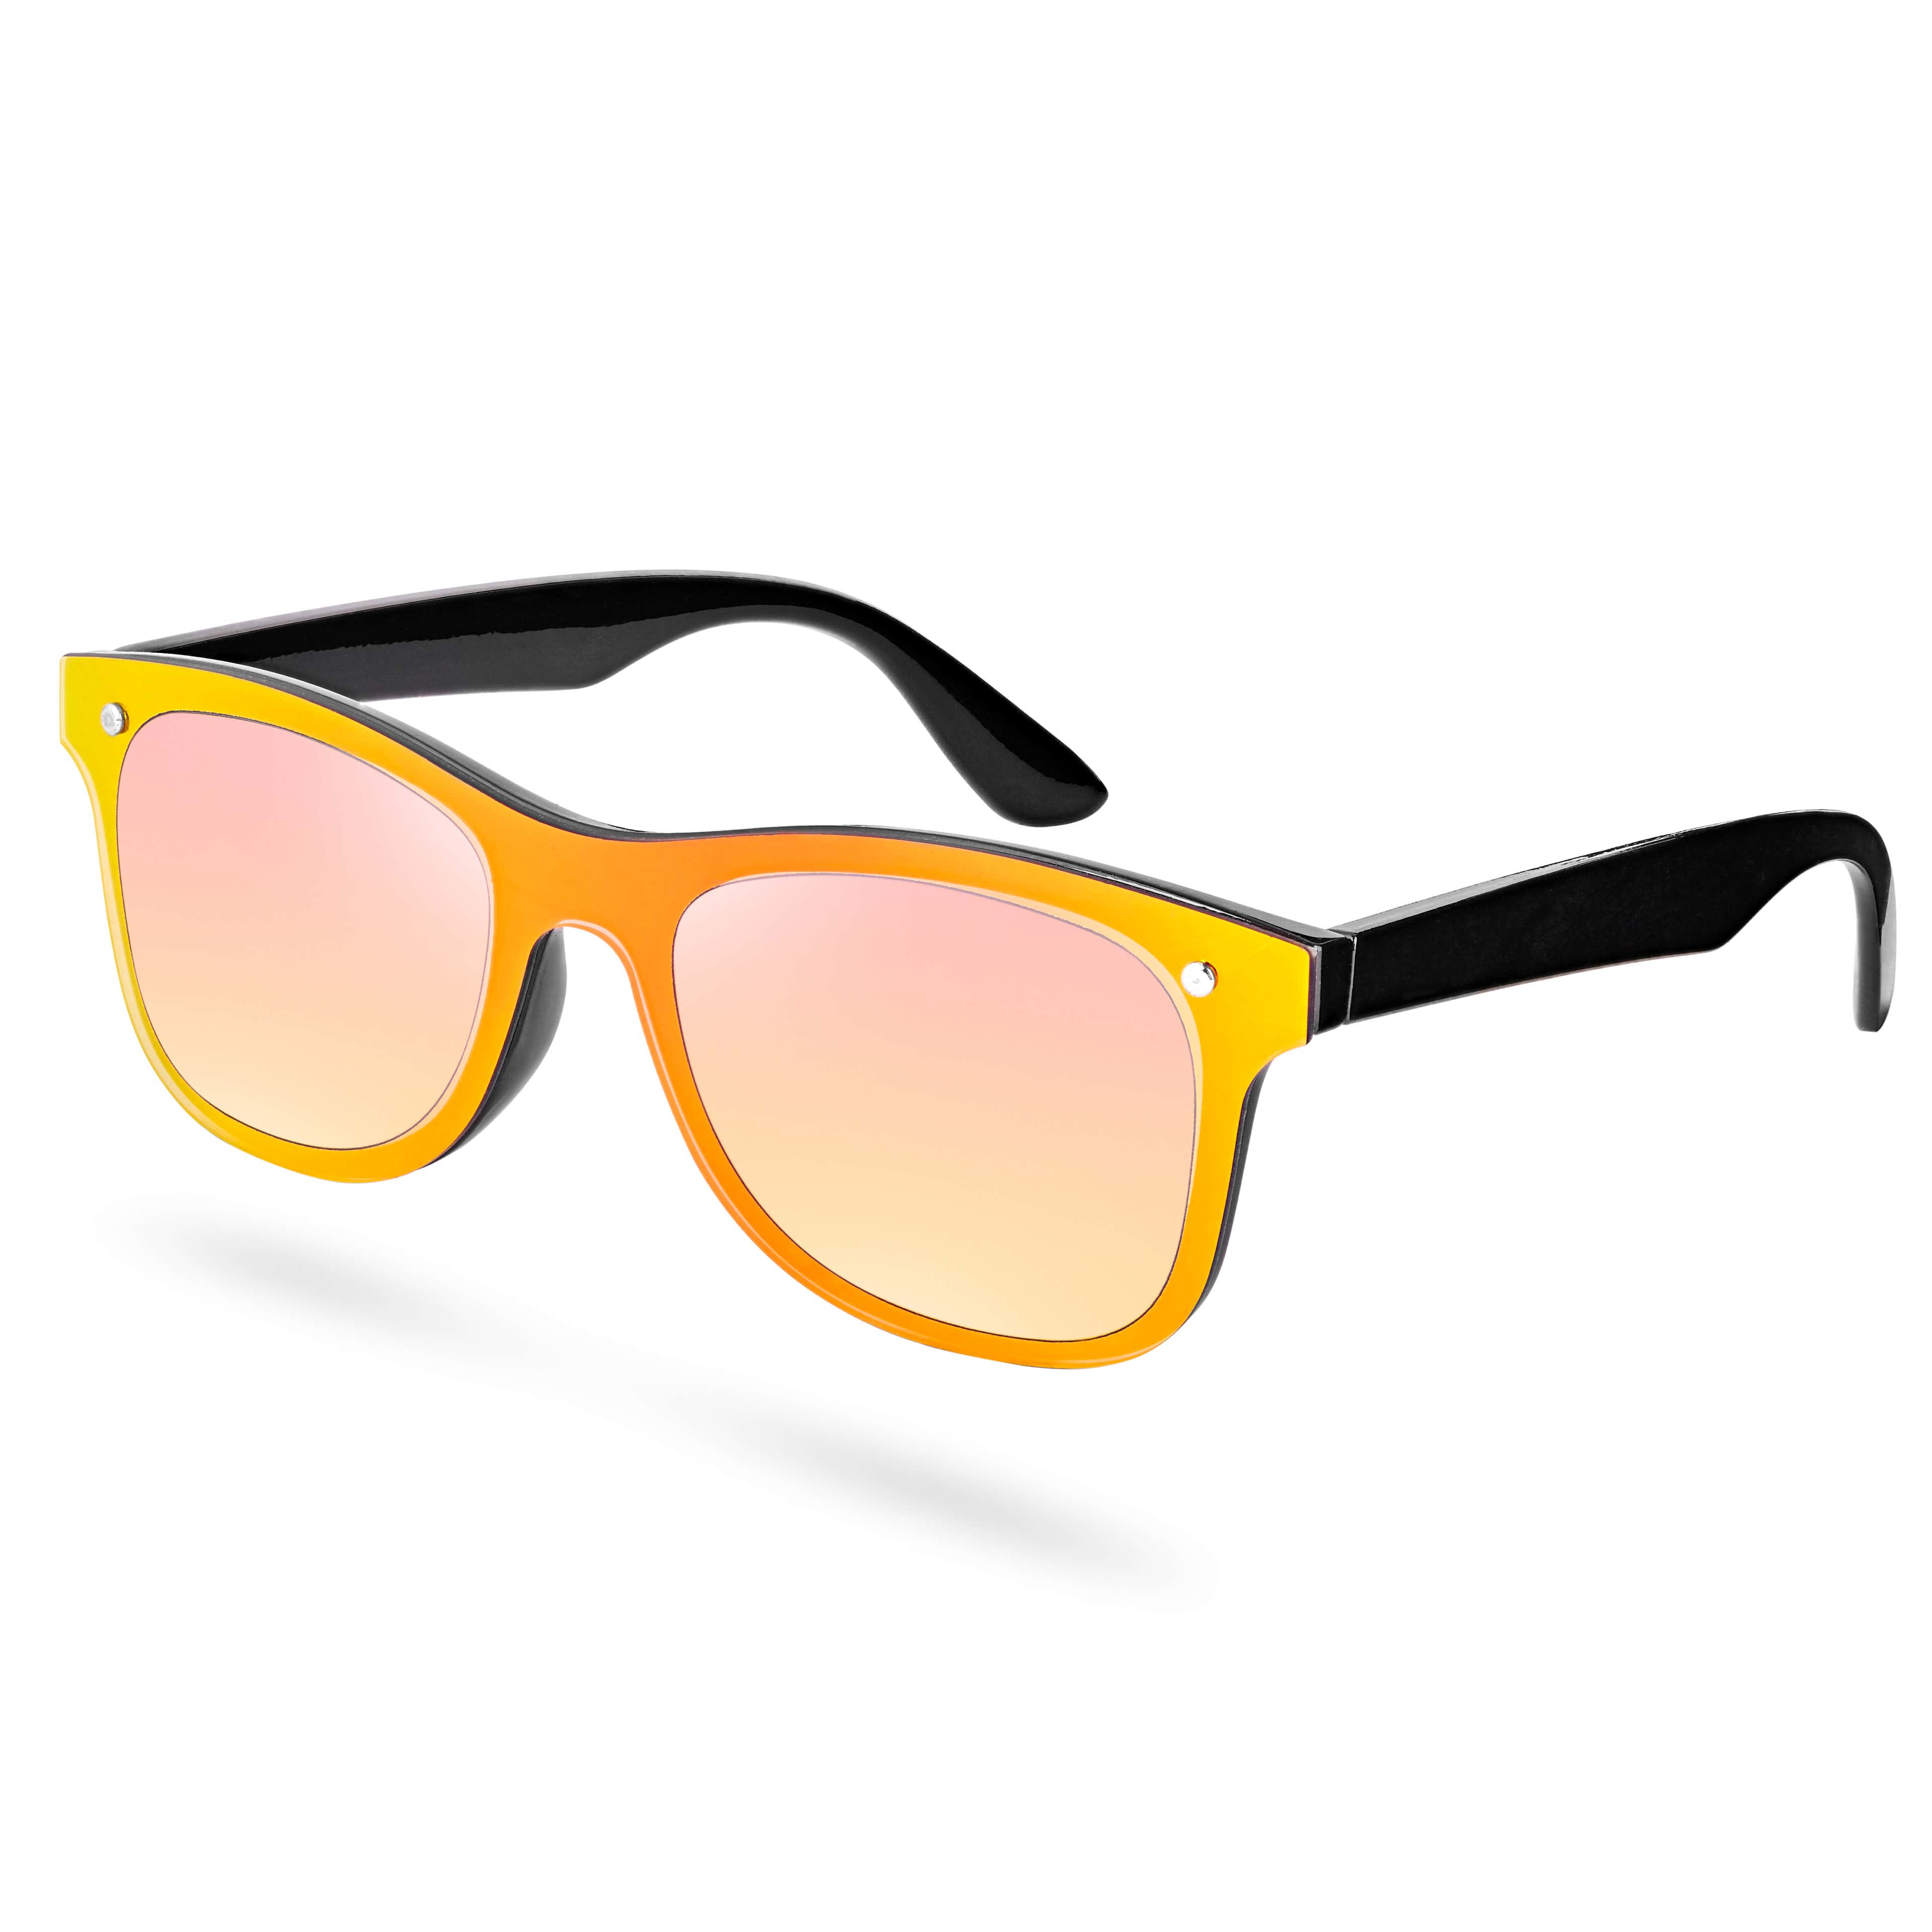 Слънчеви очила с жълто-черни рамки